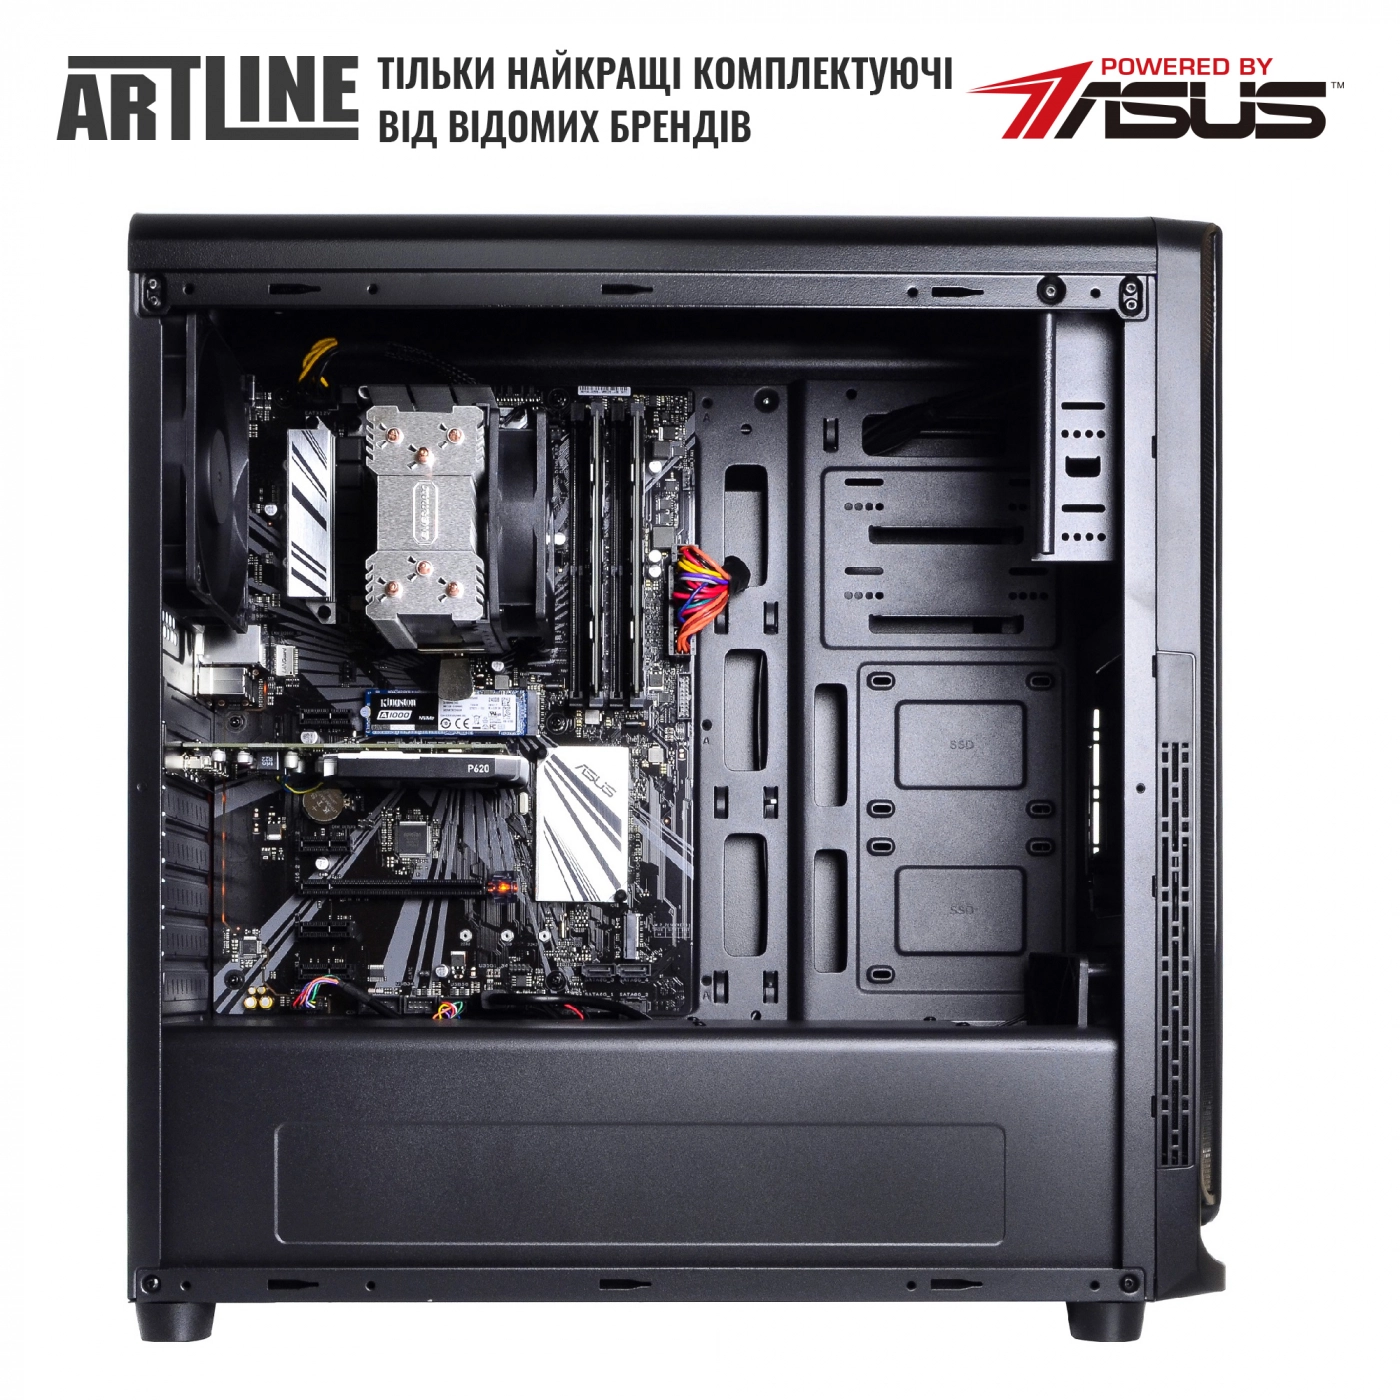 Купить Сервер ARTLINE Business T63v08 - фото 5